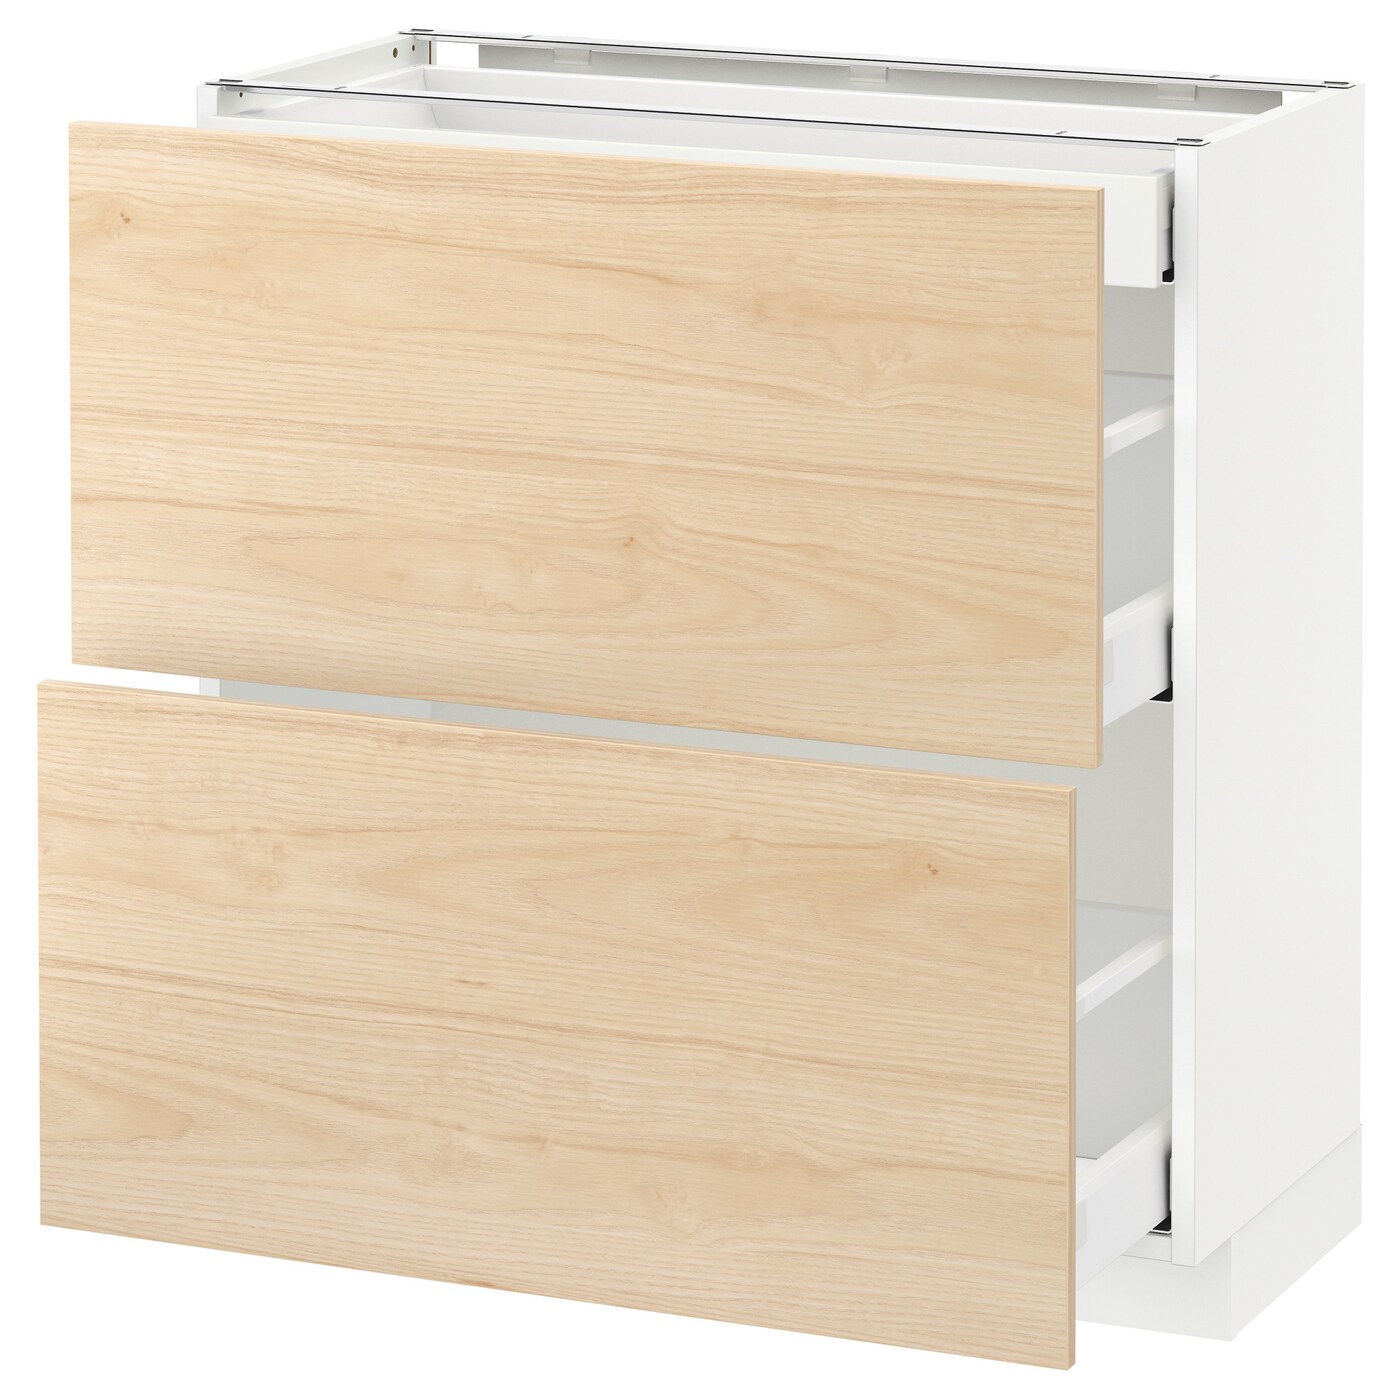 Напольный кухонный шкаф  - IKEA METOD MAXIMERA, 88x39x80см, белый/светлый ясень, МЕТОД МАКСИМЕРА ИКЕА